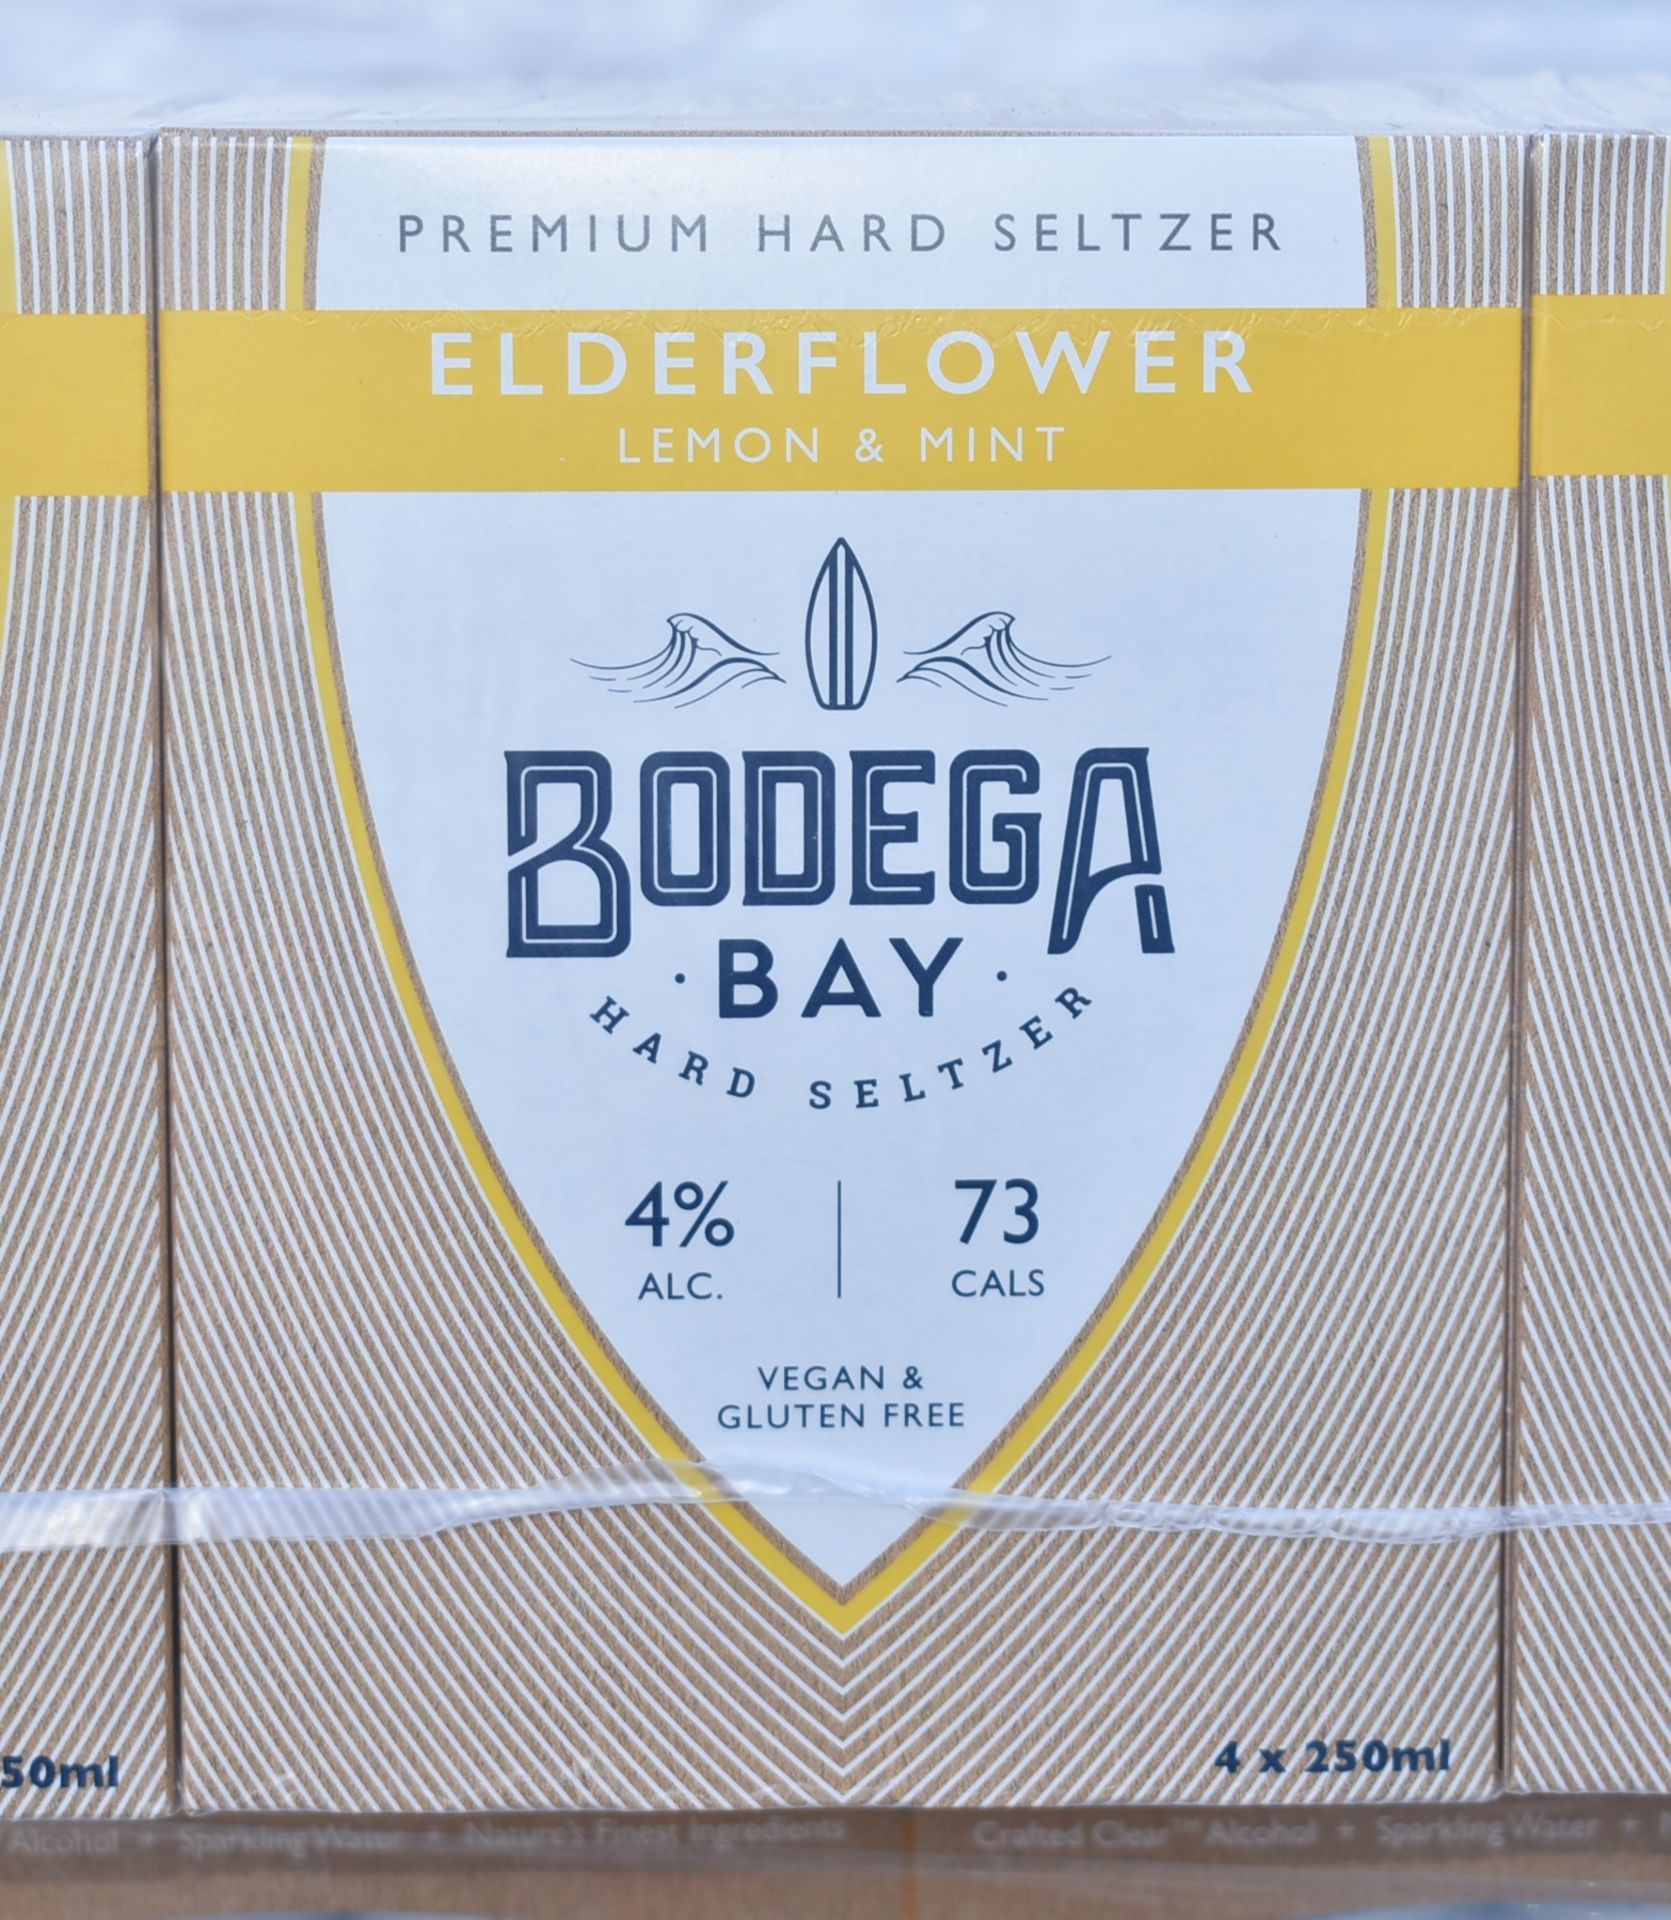 24 x Bodega Bay Hard Seltzer 250ml Alcoholic Sparkling Water Drinks - Elderflower Lemon & Mint - - Image 5 of 9